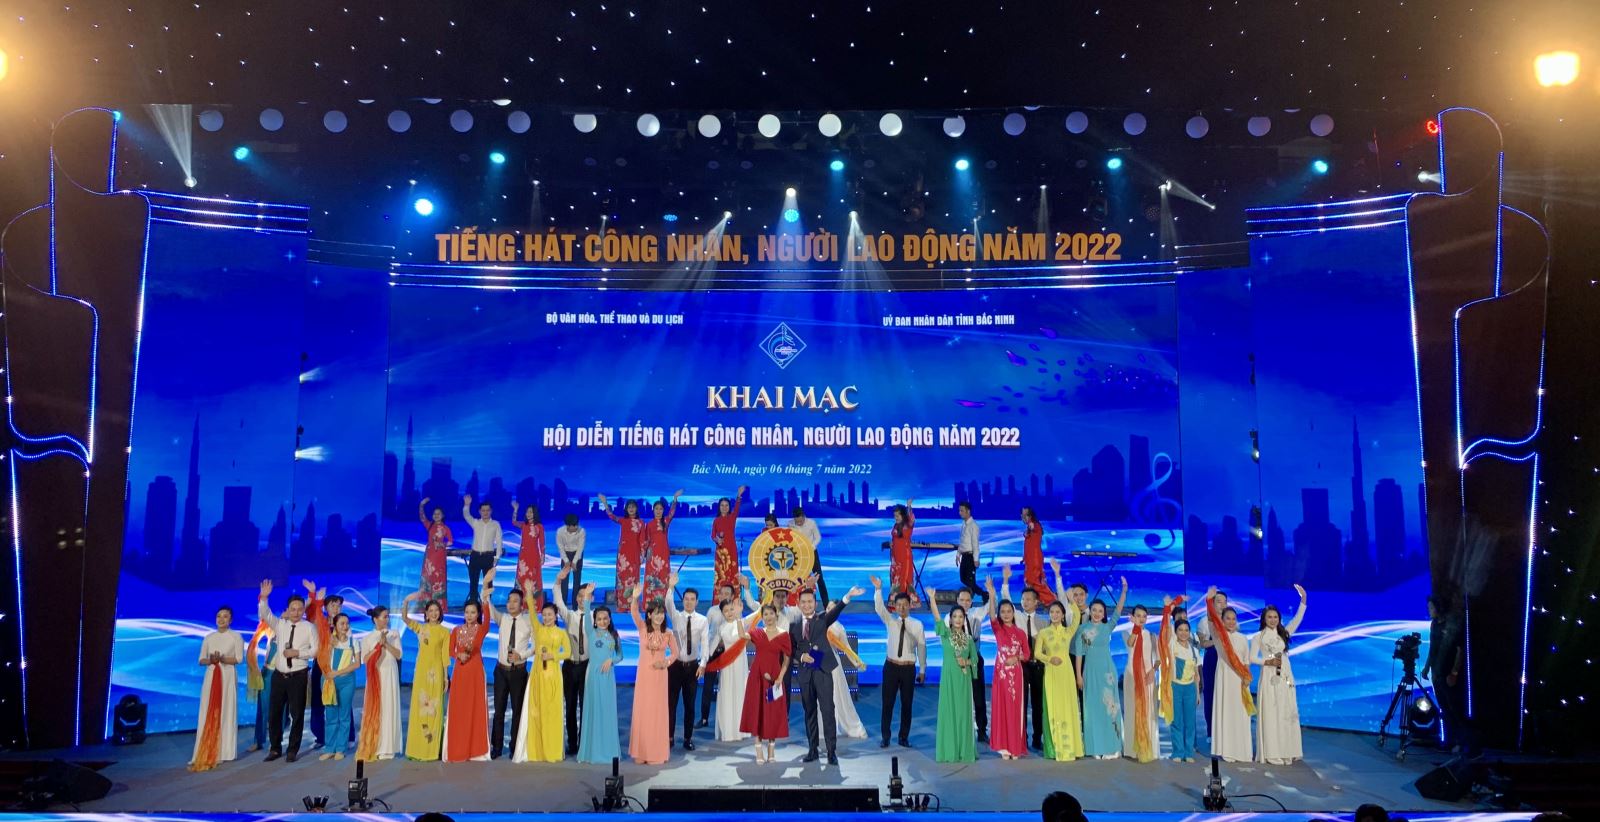   Hội diễn “Tiếng hát công nhân, người lao động năm 2022”: Phát huy những phẩm chất, giá trị tốt đẹp của công nhân Việt Nam